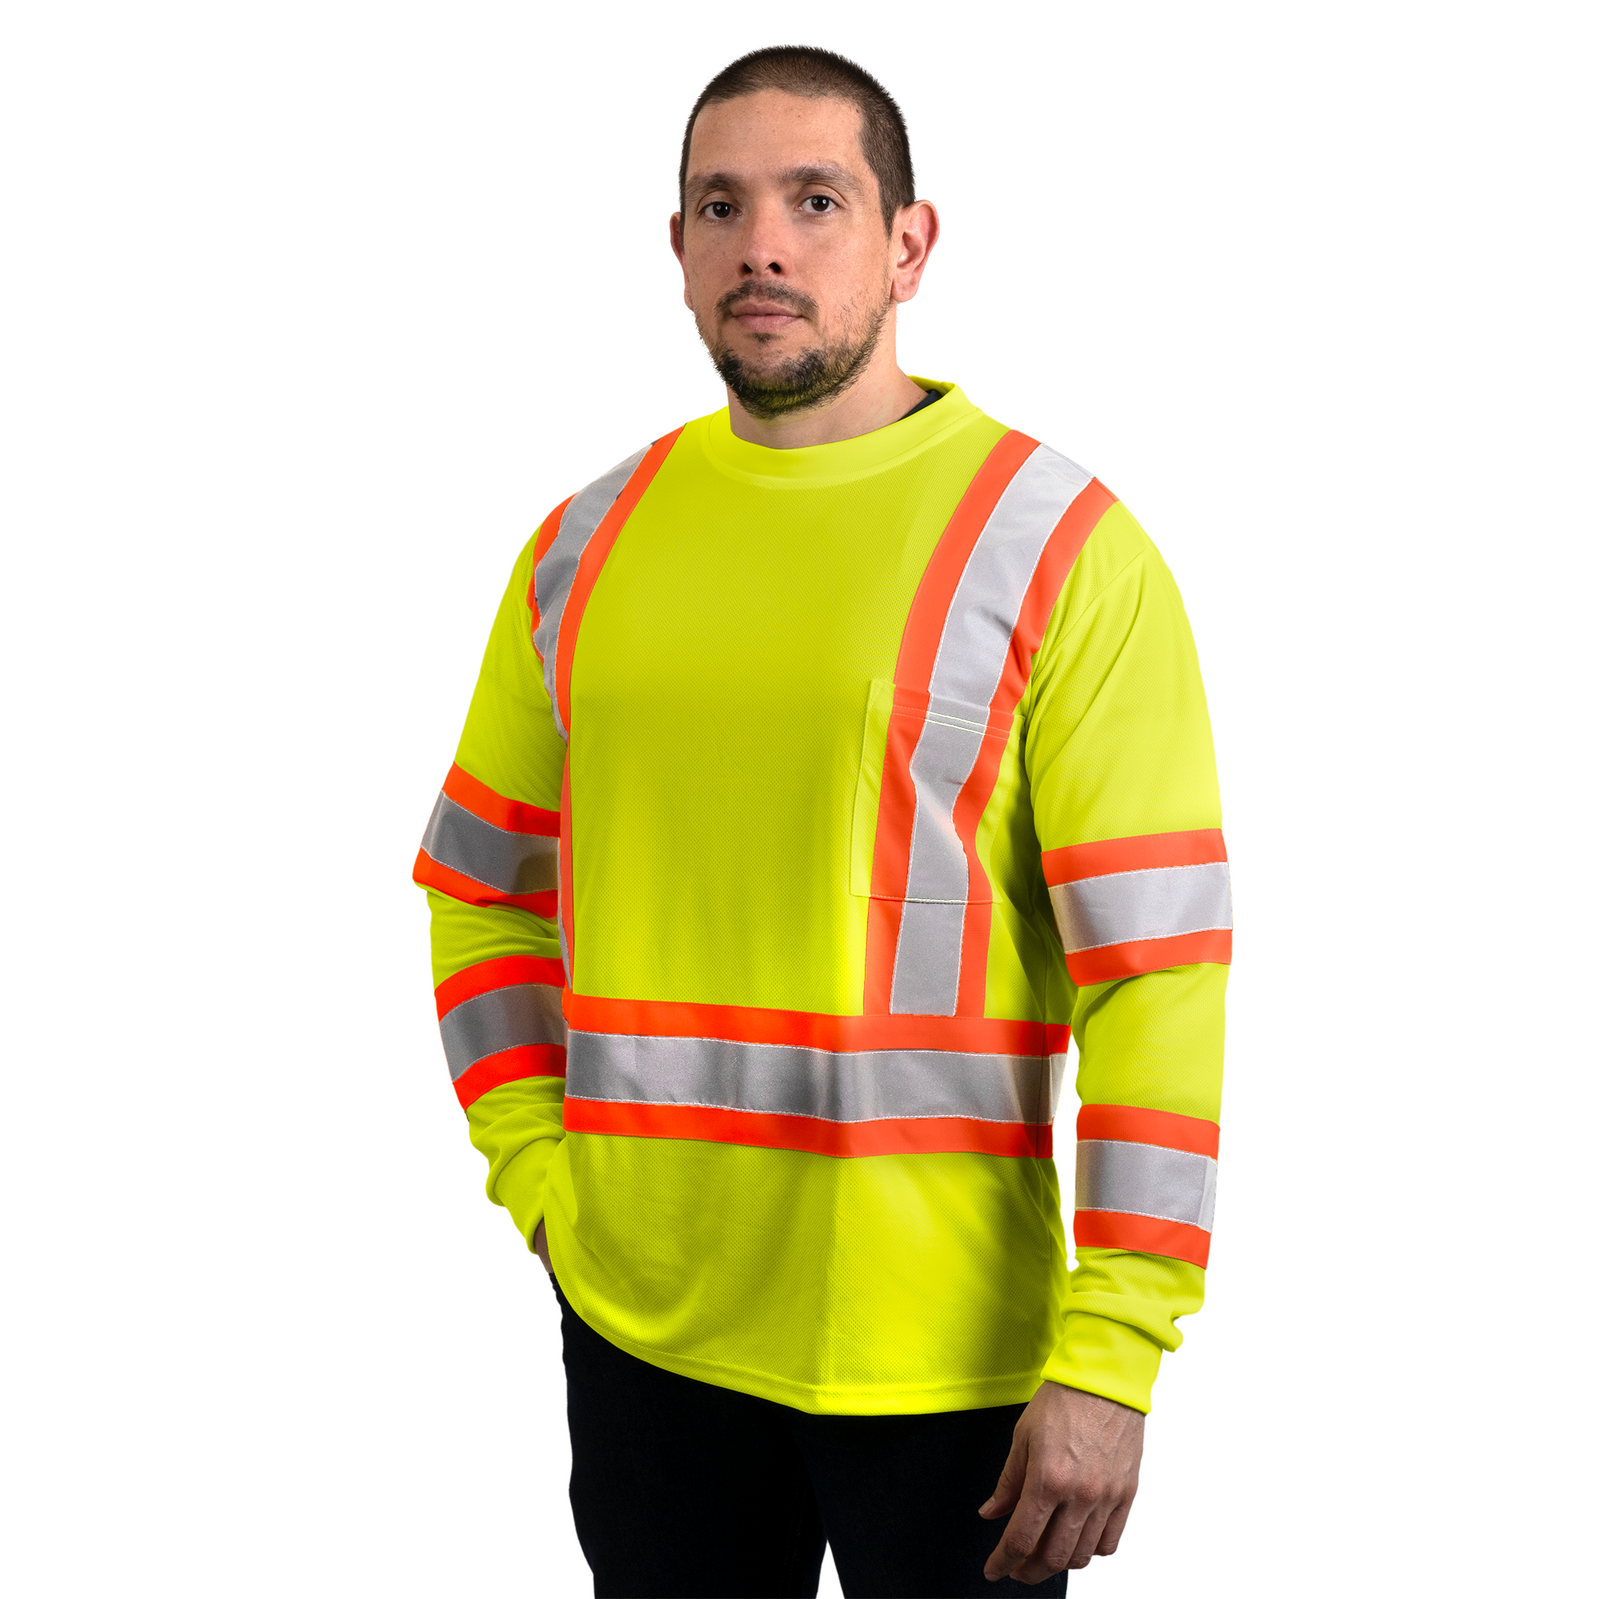 Man wearing the long sleeve JORESTECH hi-vis yellow safety shirt ANSI class 3 type R